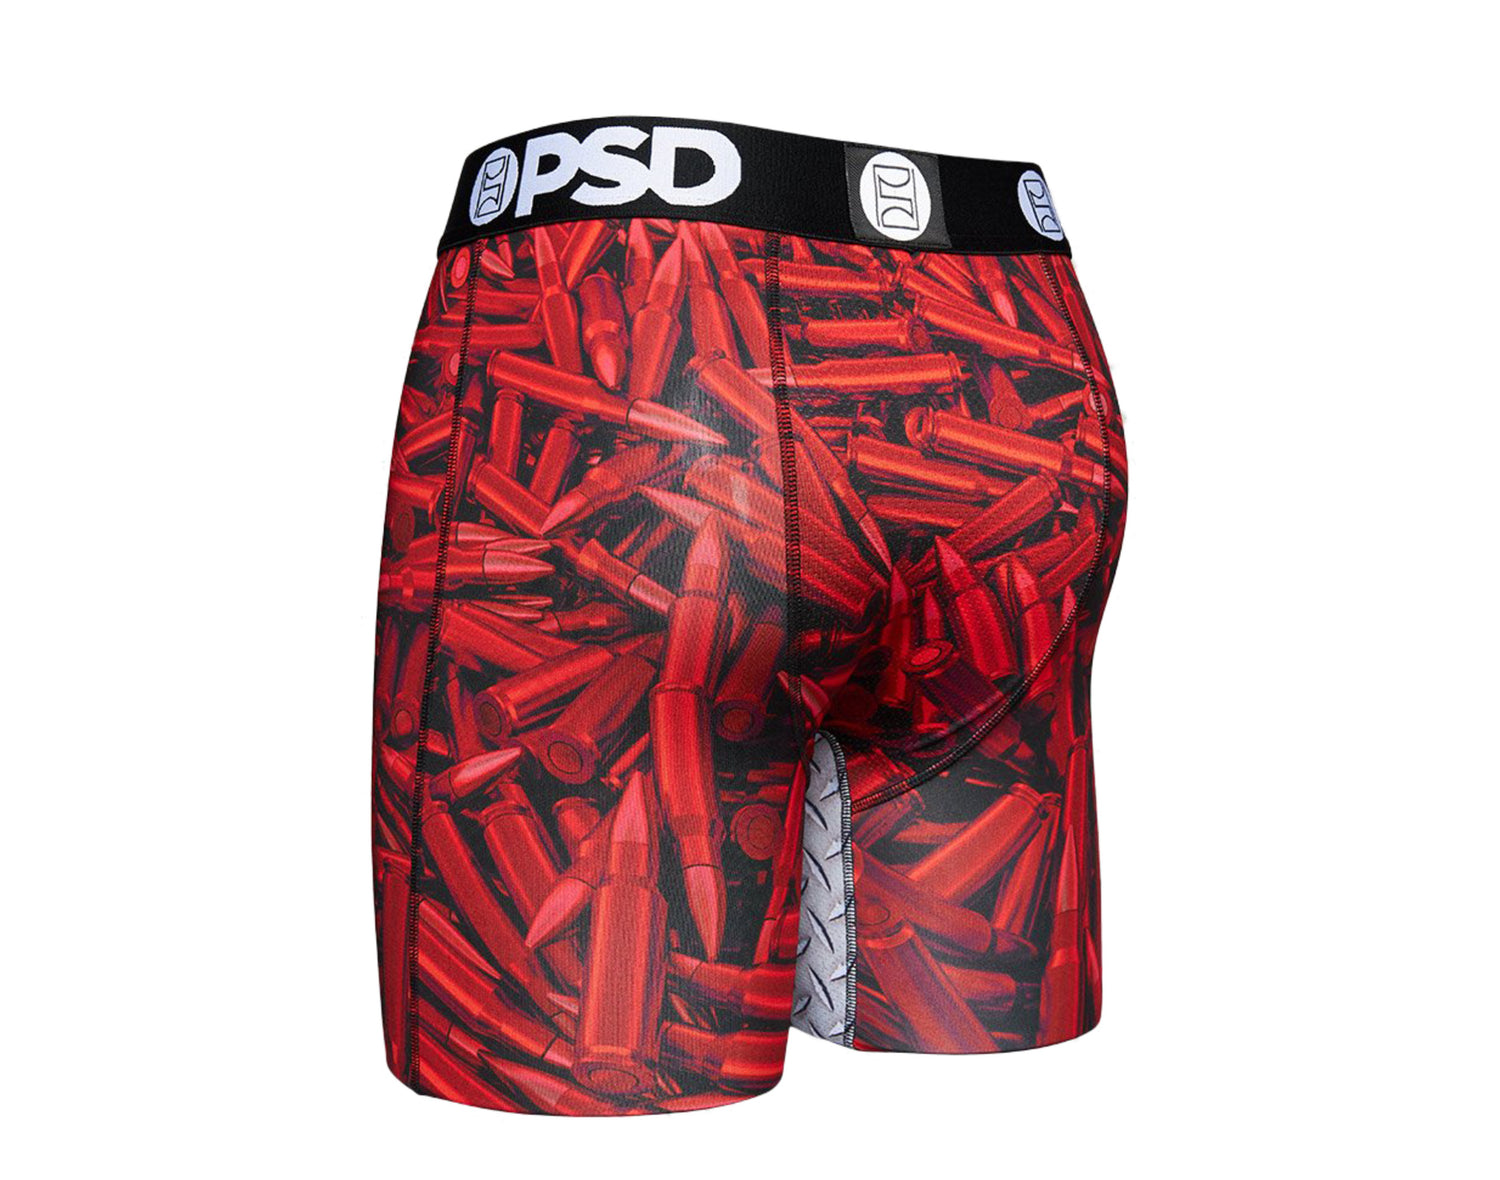 PSD Ammo Warface Boxer Briefs Men's Underwear